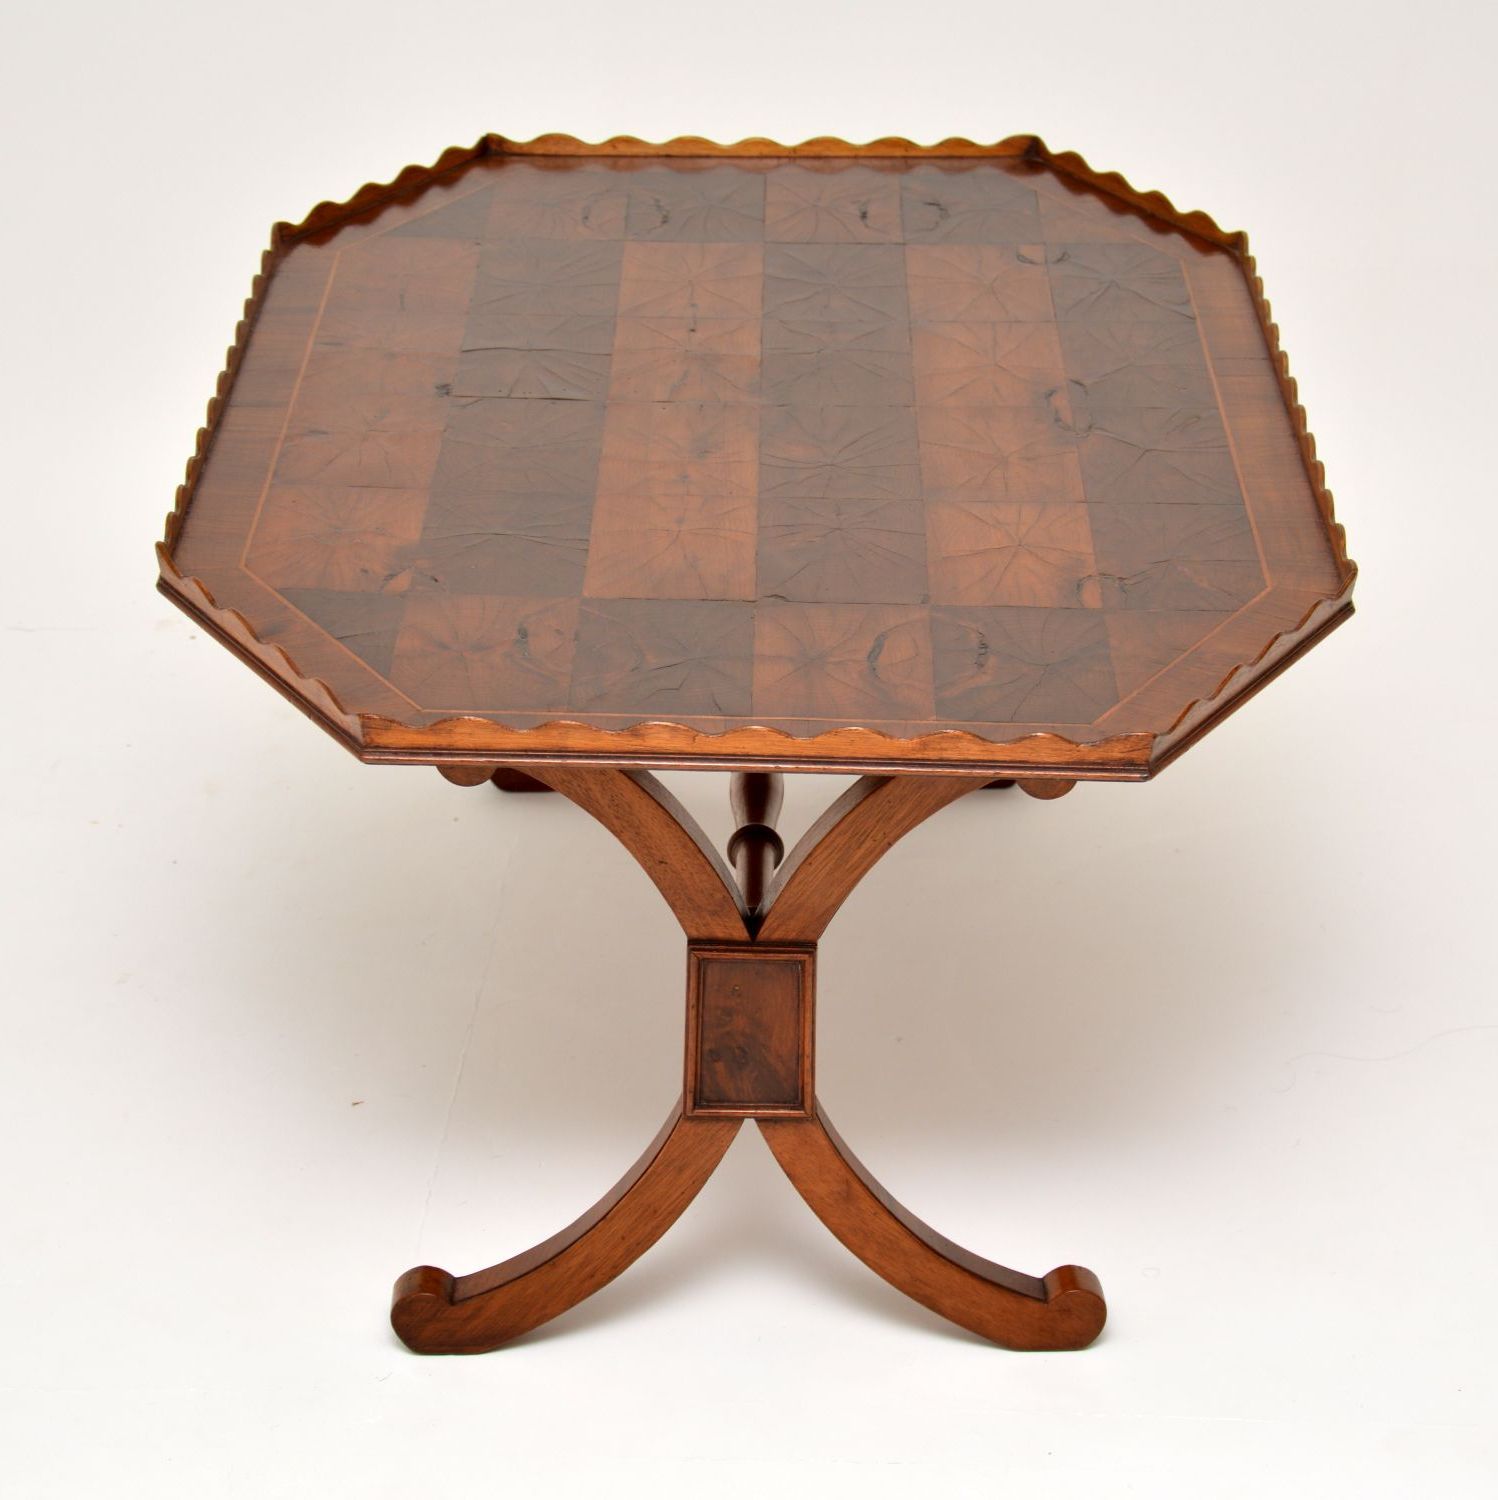 Wood Veneer Coffee Tables Regarding Newest Antique Yew Wood Oyster Veneer Coffee Table – Marylebone (View 1 of 20)